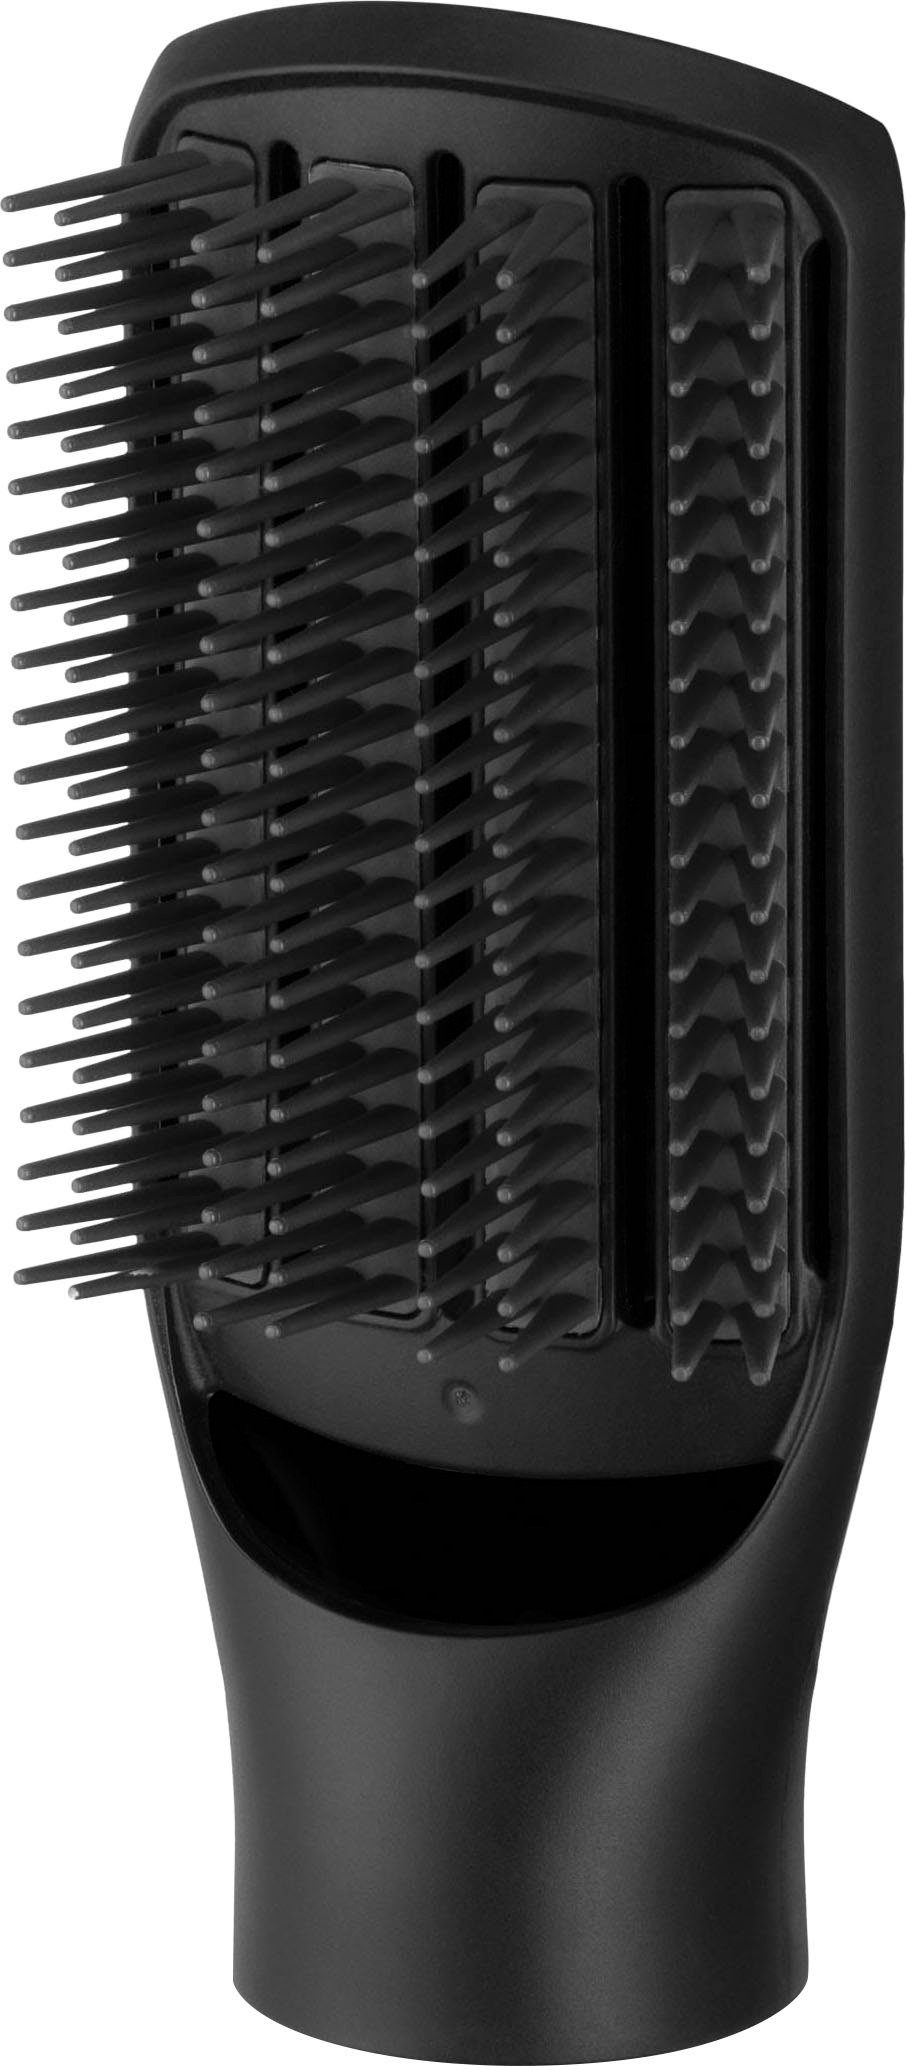 Remington Warmluftbürste Blow Dry Haarlängen Watt (rotierender AS7580, & Airstyler/Rund-& alle Style 1.000 Lockenbürste)